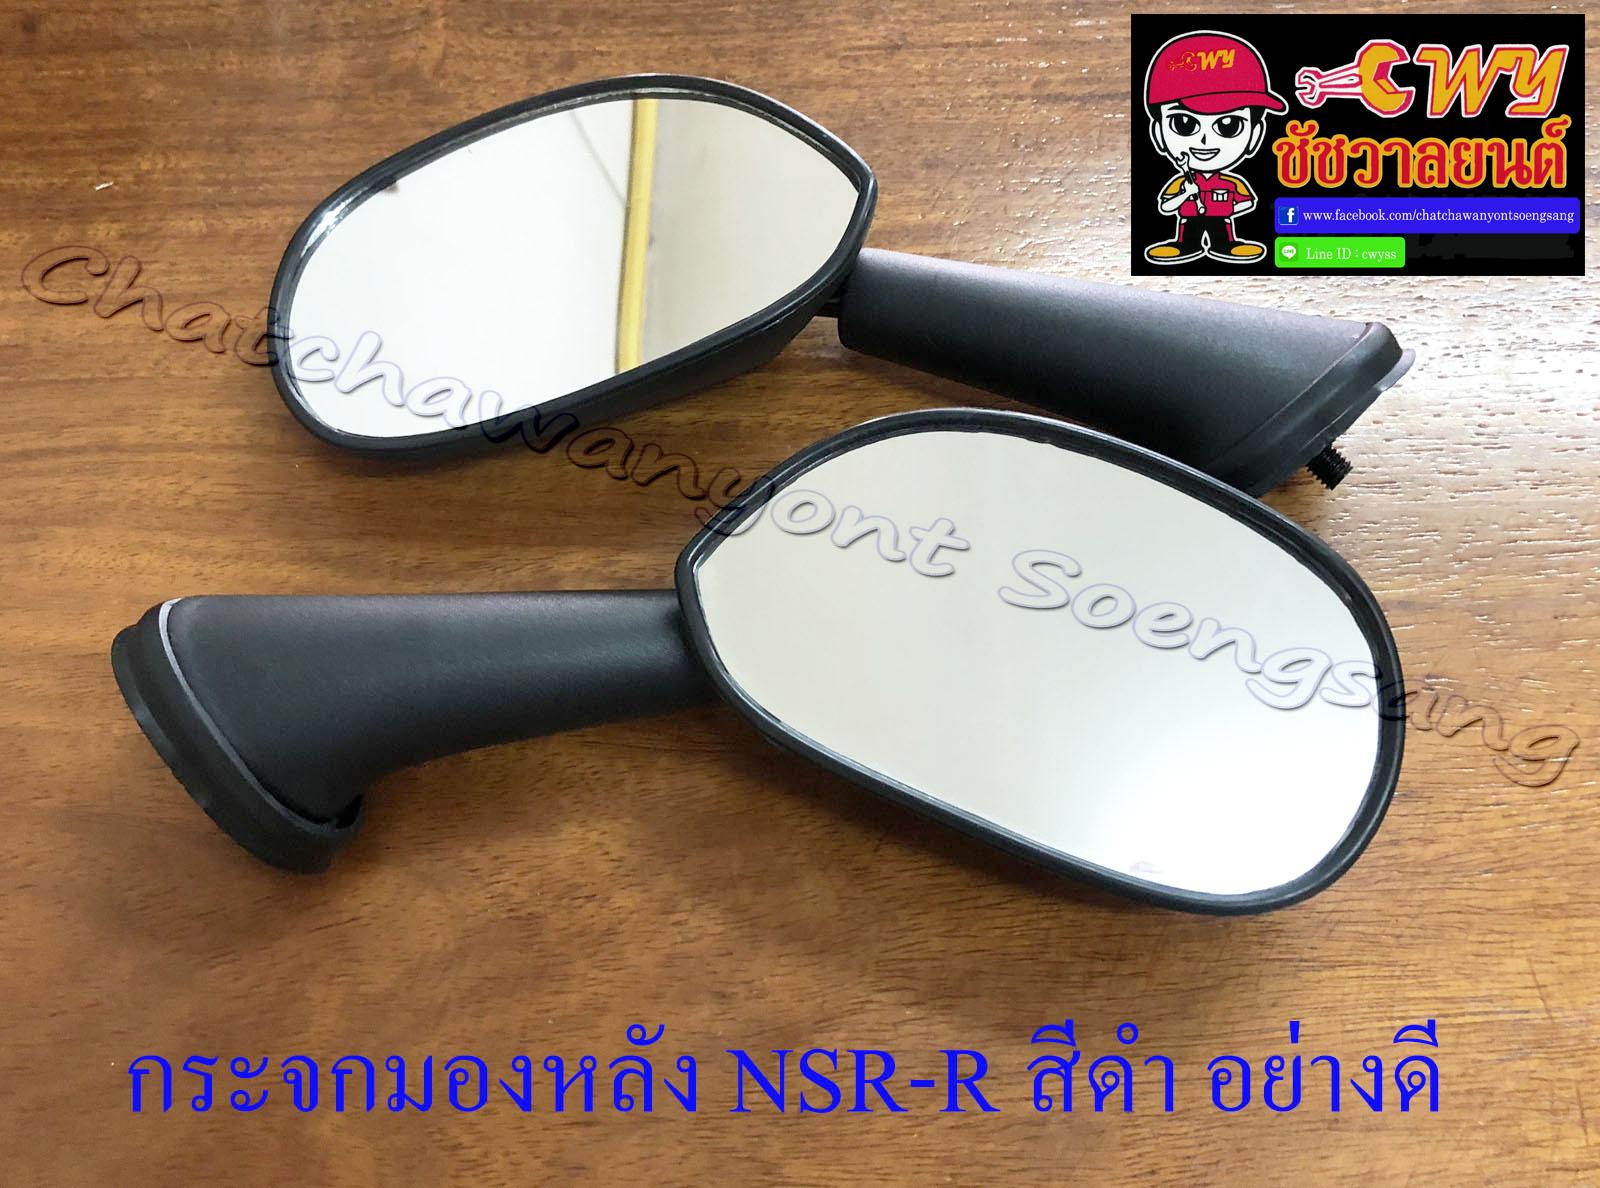 กระจกมองหลัง NSR150-RR สีดำ อย่างดี ทรงเดิมติดรถ (551)